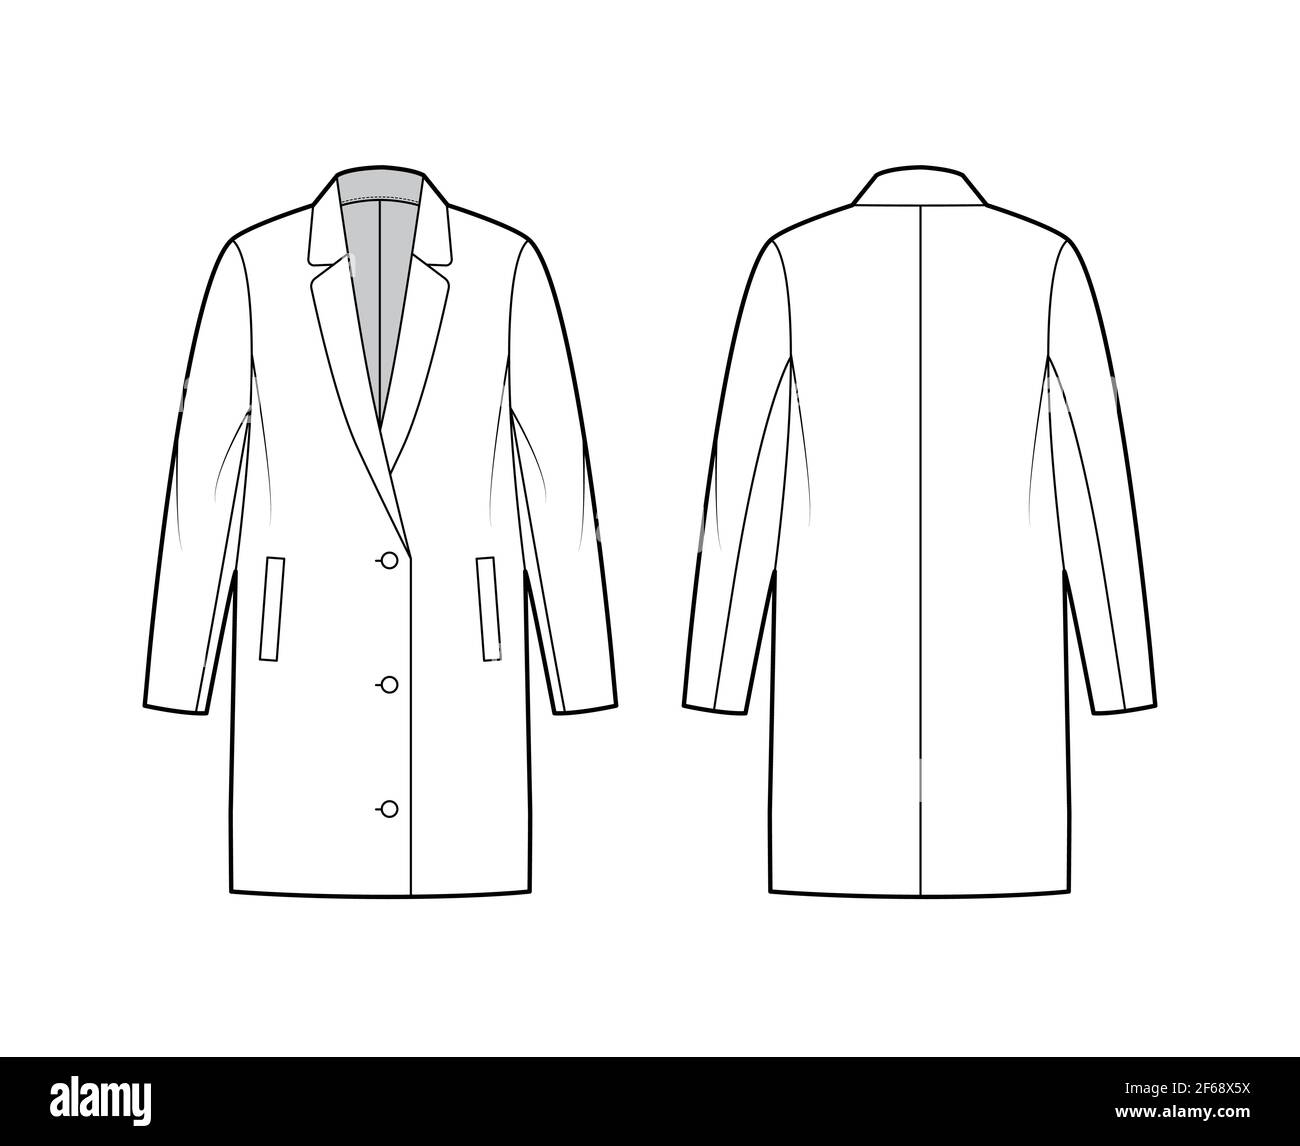 Oversized jacket technical fashion illustration with notched elongated ...